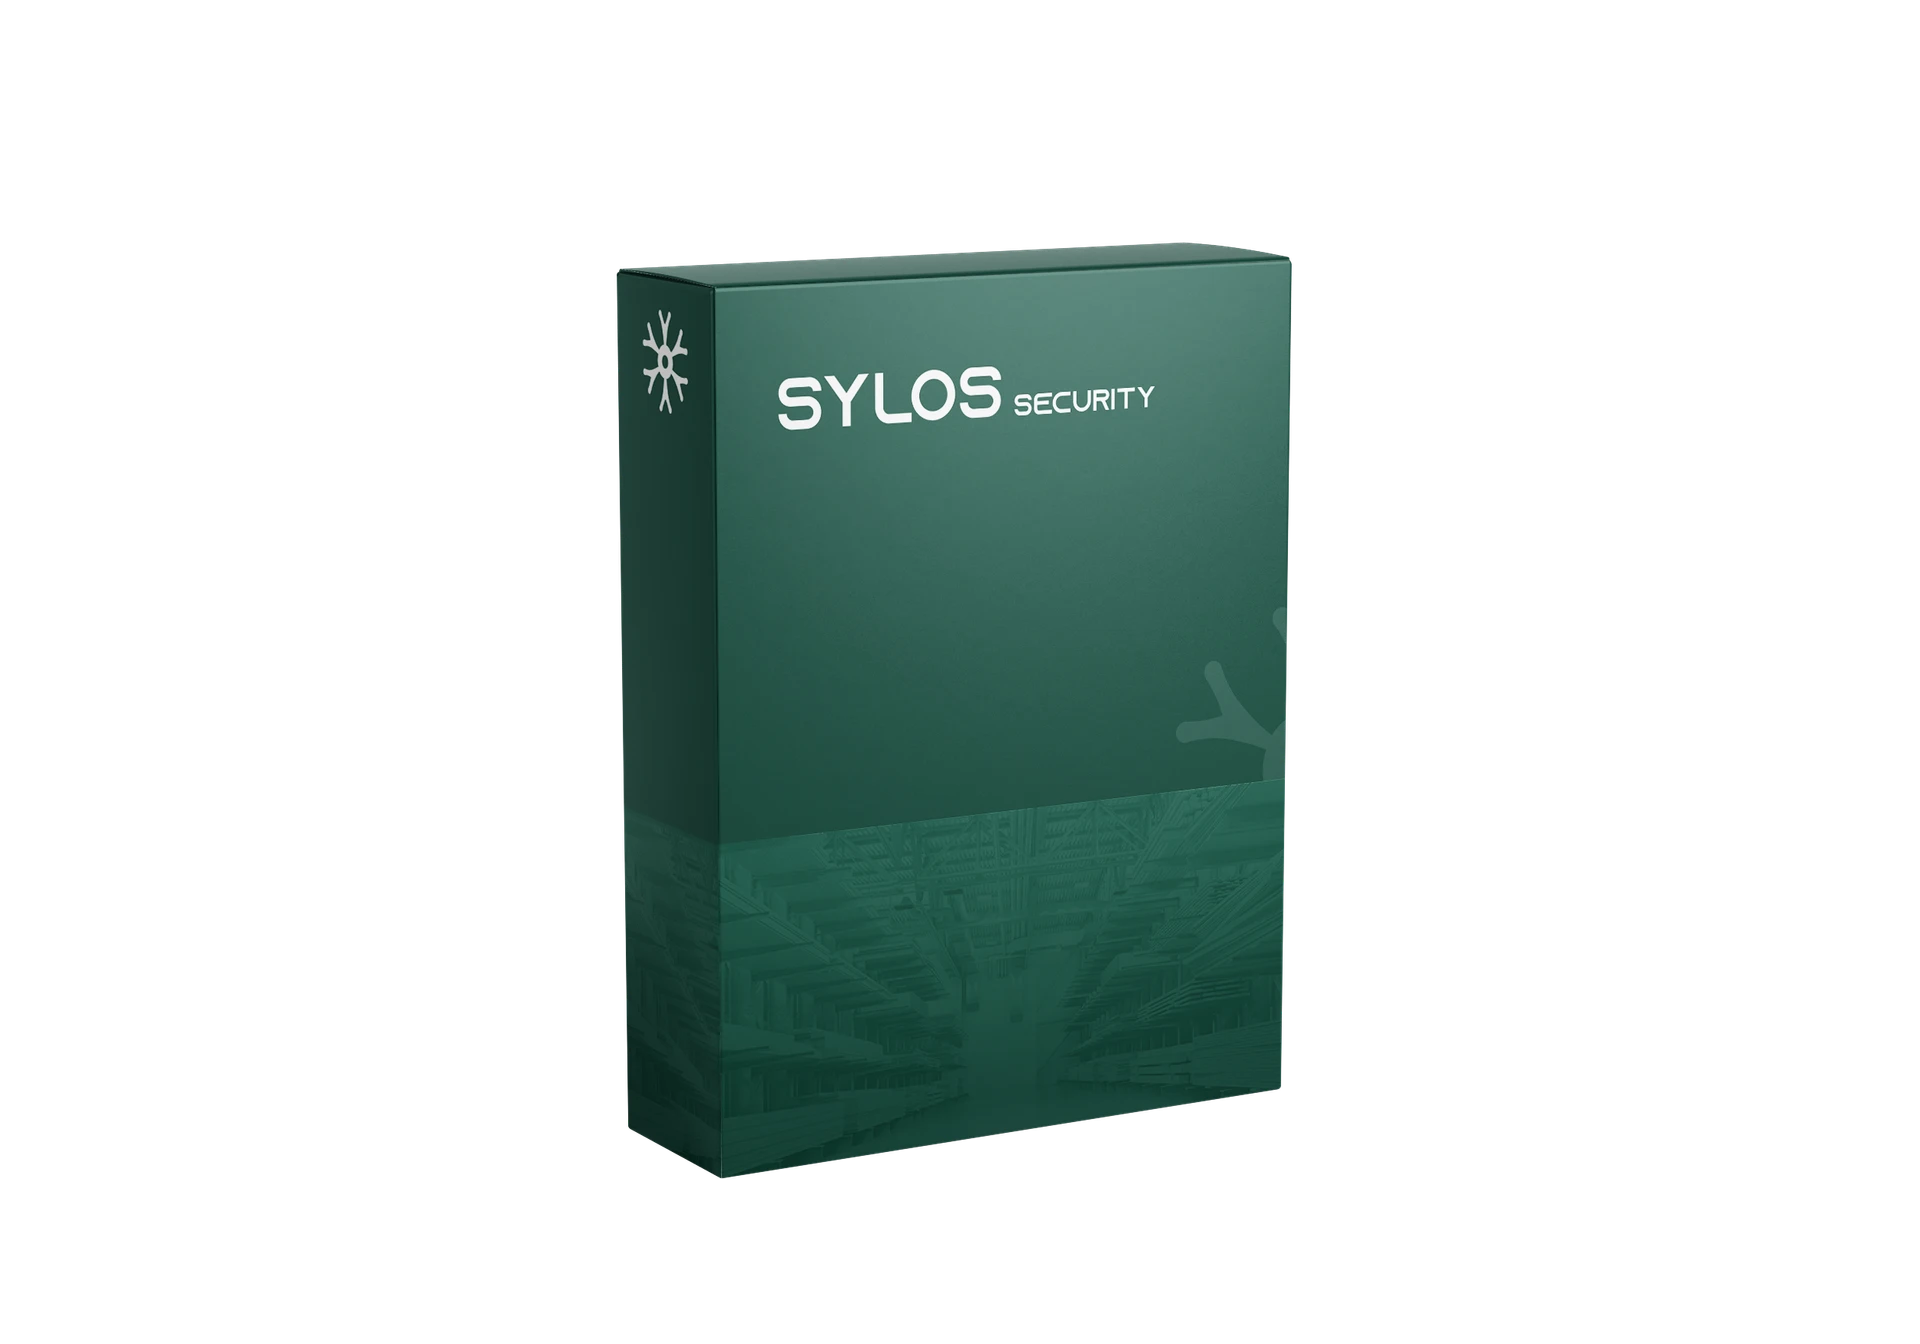 Sylos security